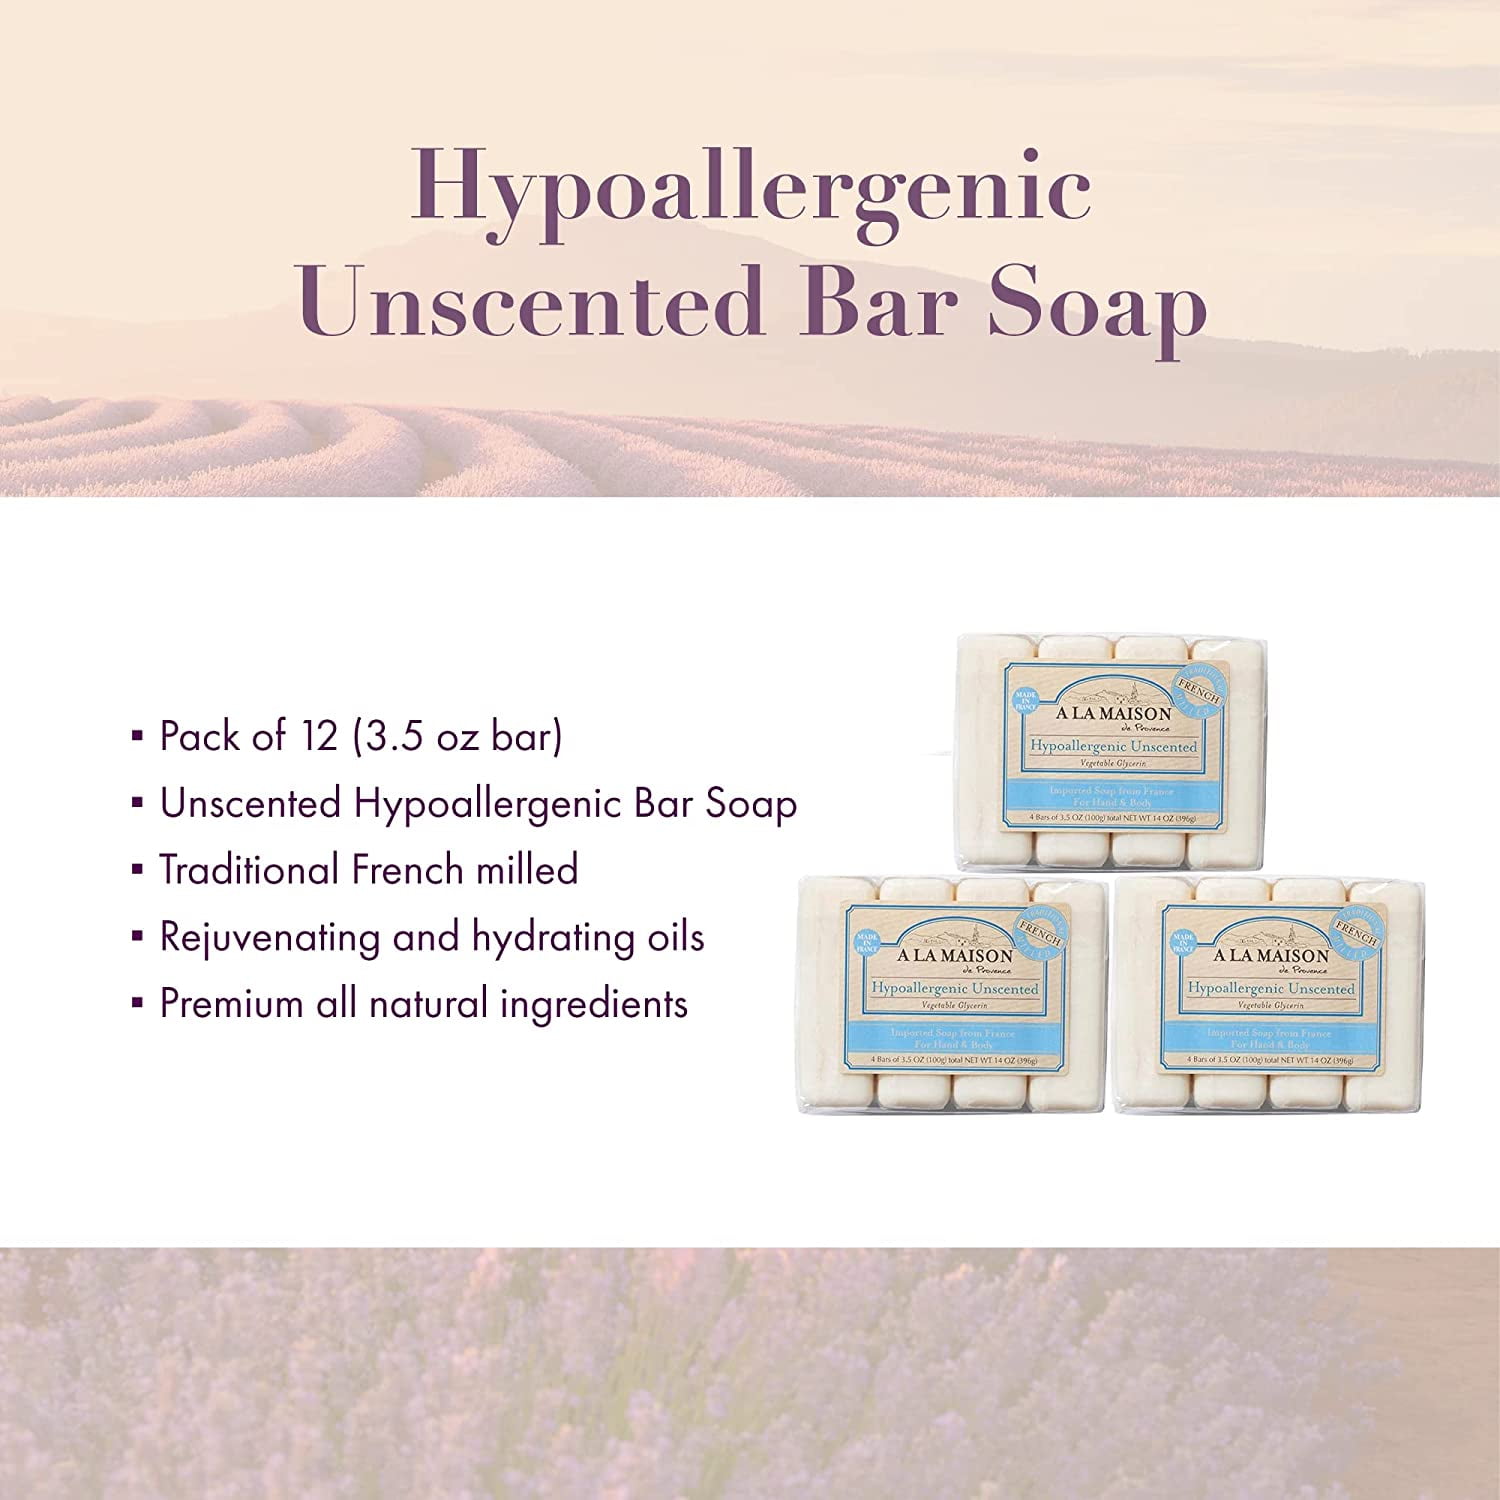 A La Maison Hypoallergenic Unscented Bar Soap, 4 ct/3.5 oz - City